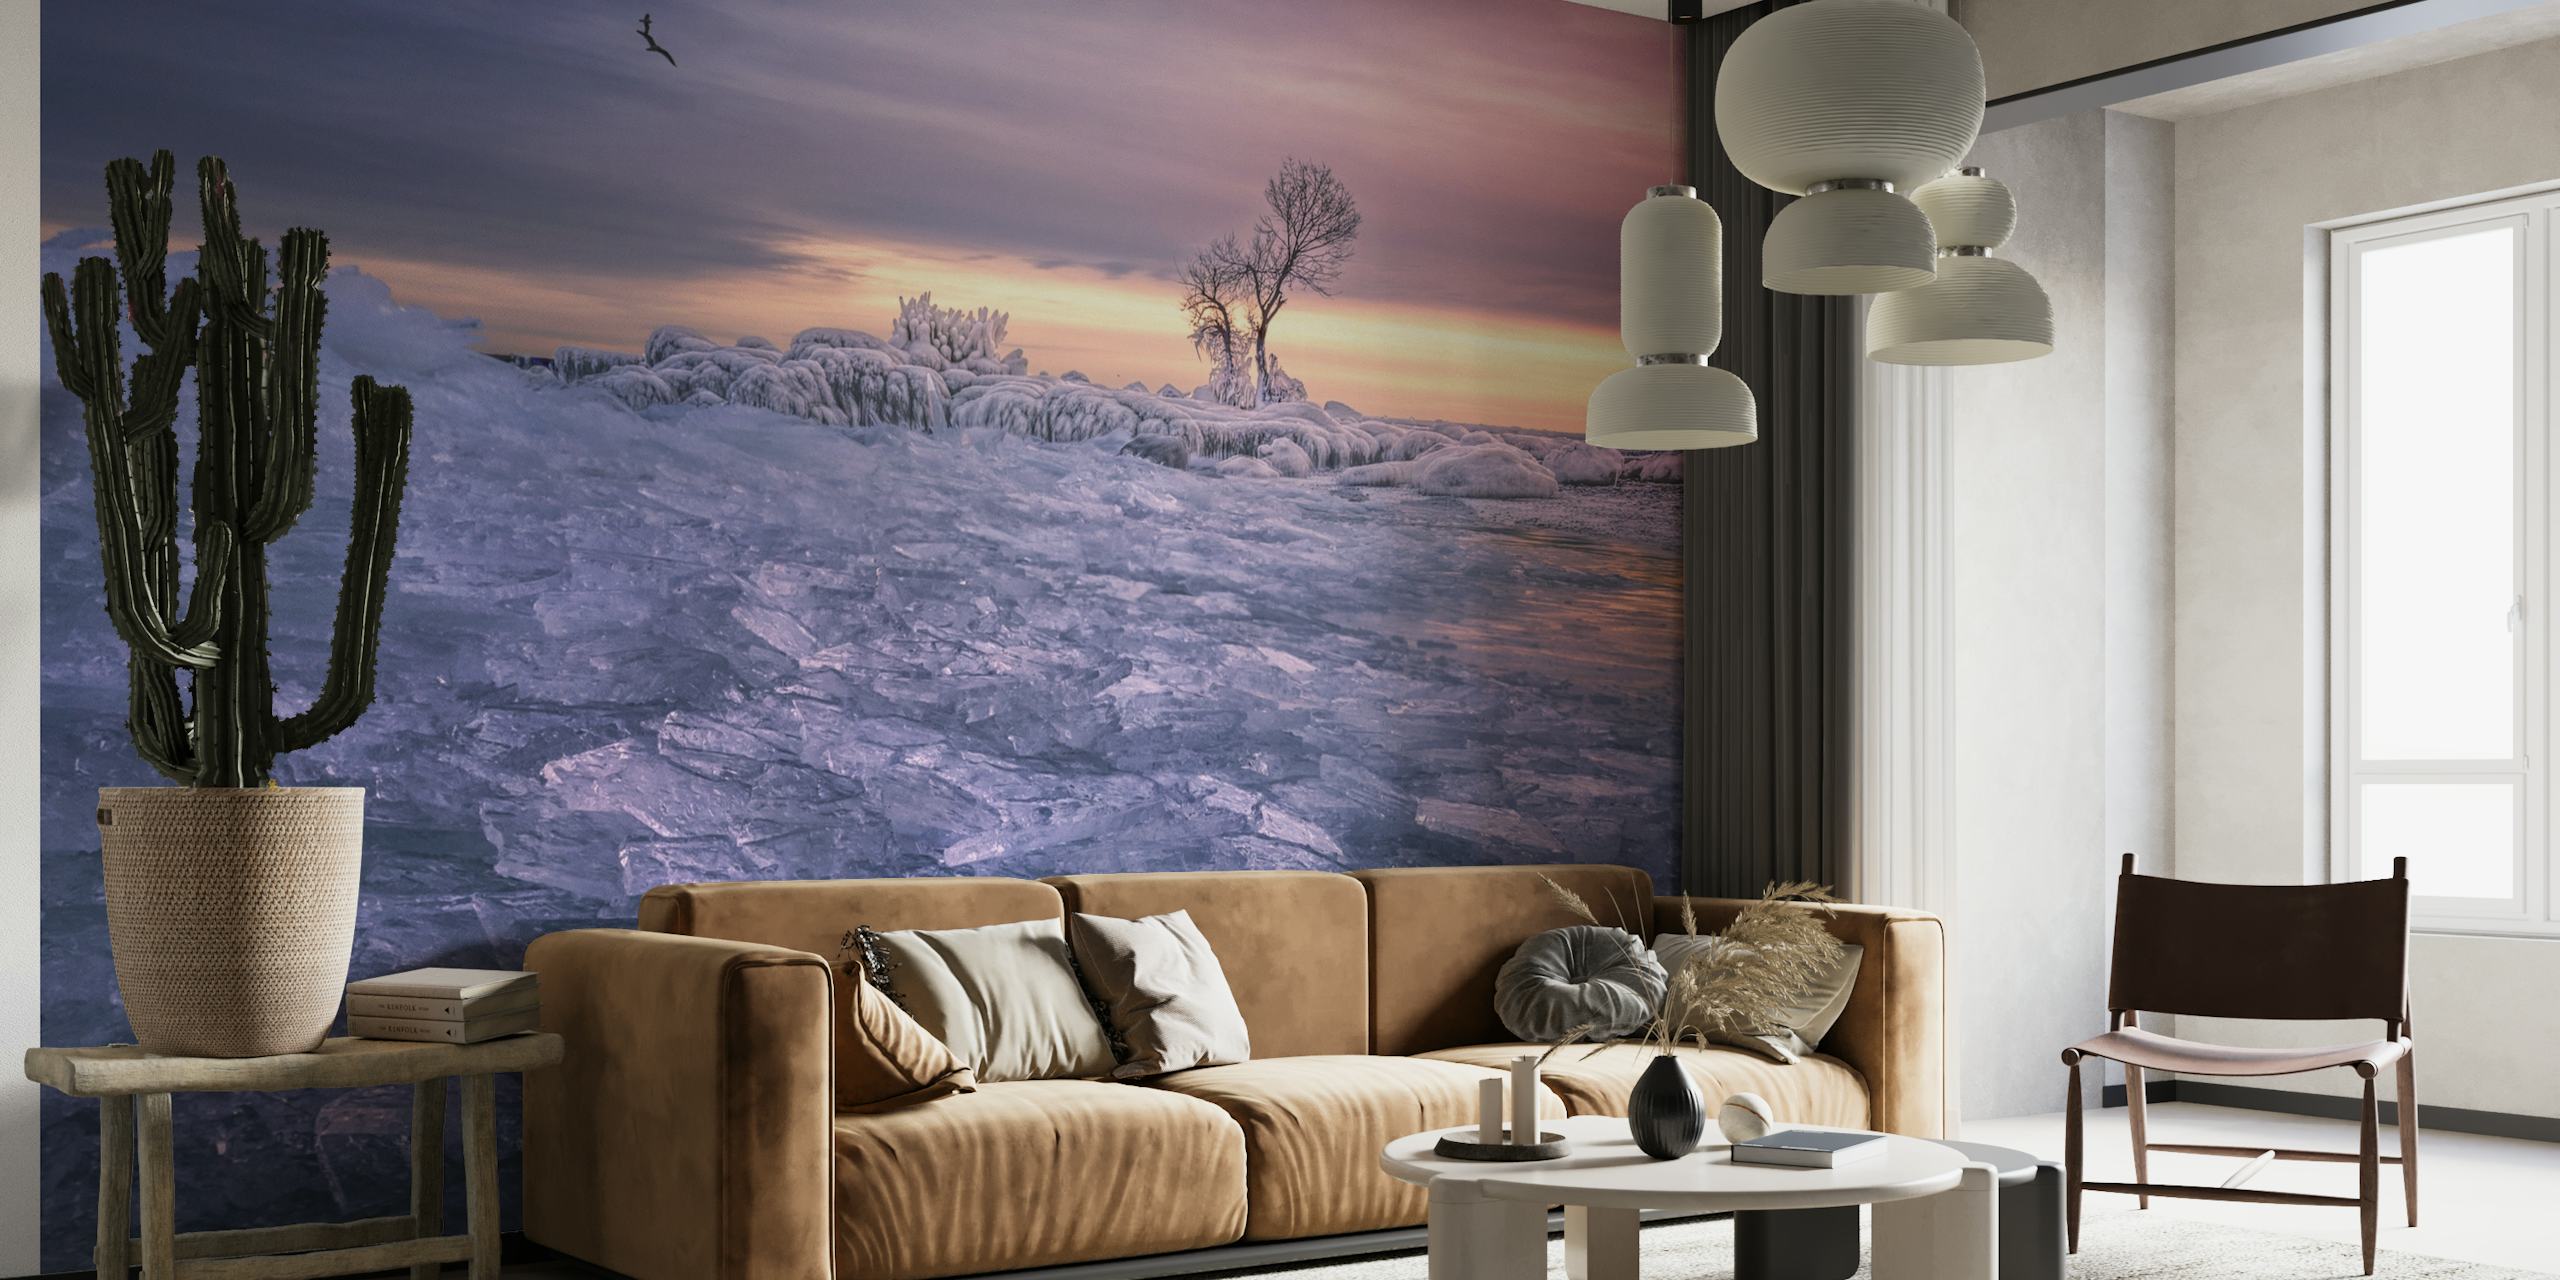 Eine ruhige Fototapete mit Winterszene mit einem einsamen Baum und Dämmerungstönen über einer gefrorenen Landschaft.